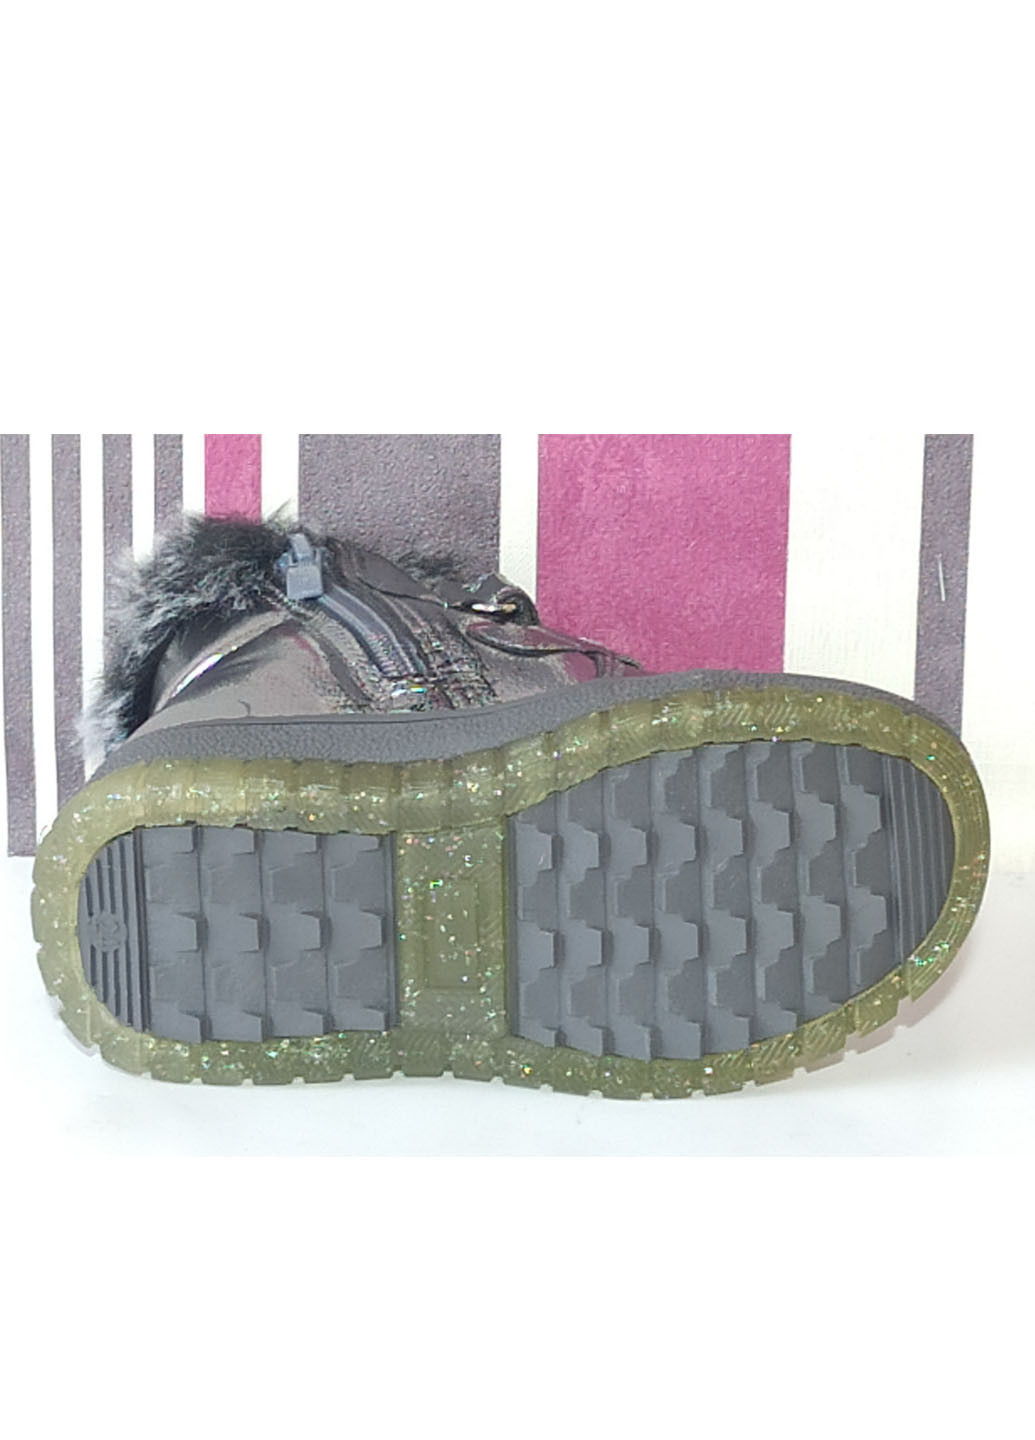 Зимові черевики для дівчинки на овчині Н220 23-15,3см 24-15,8см 25-16,7см Clibee (263519436)